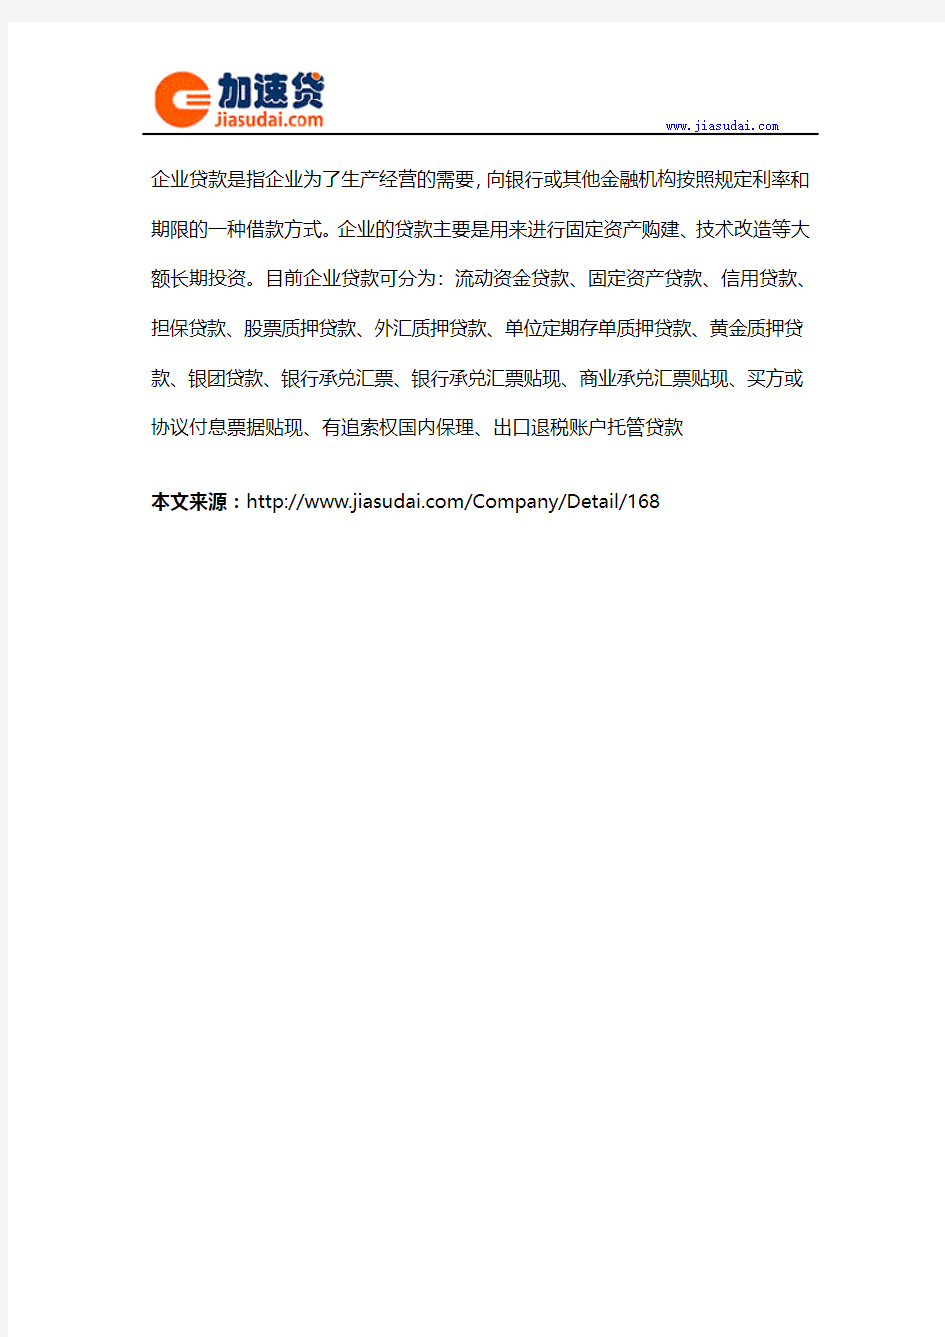 上海融宜宝企业贷信用贷款无抵押贷款申请条件、手续